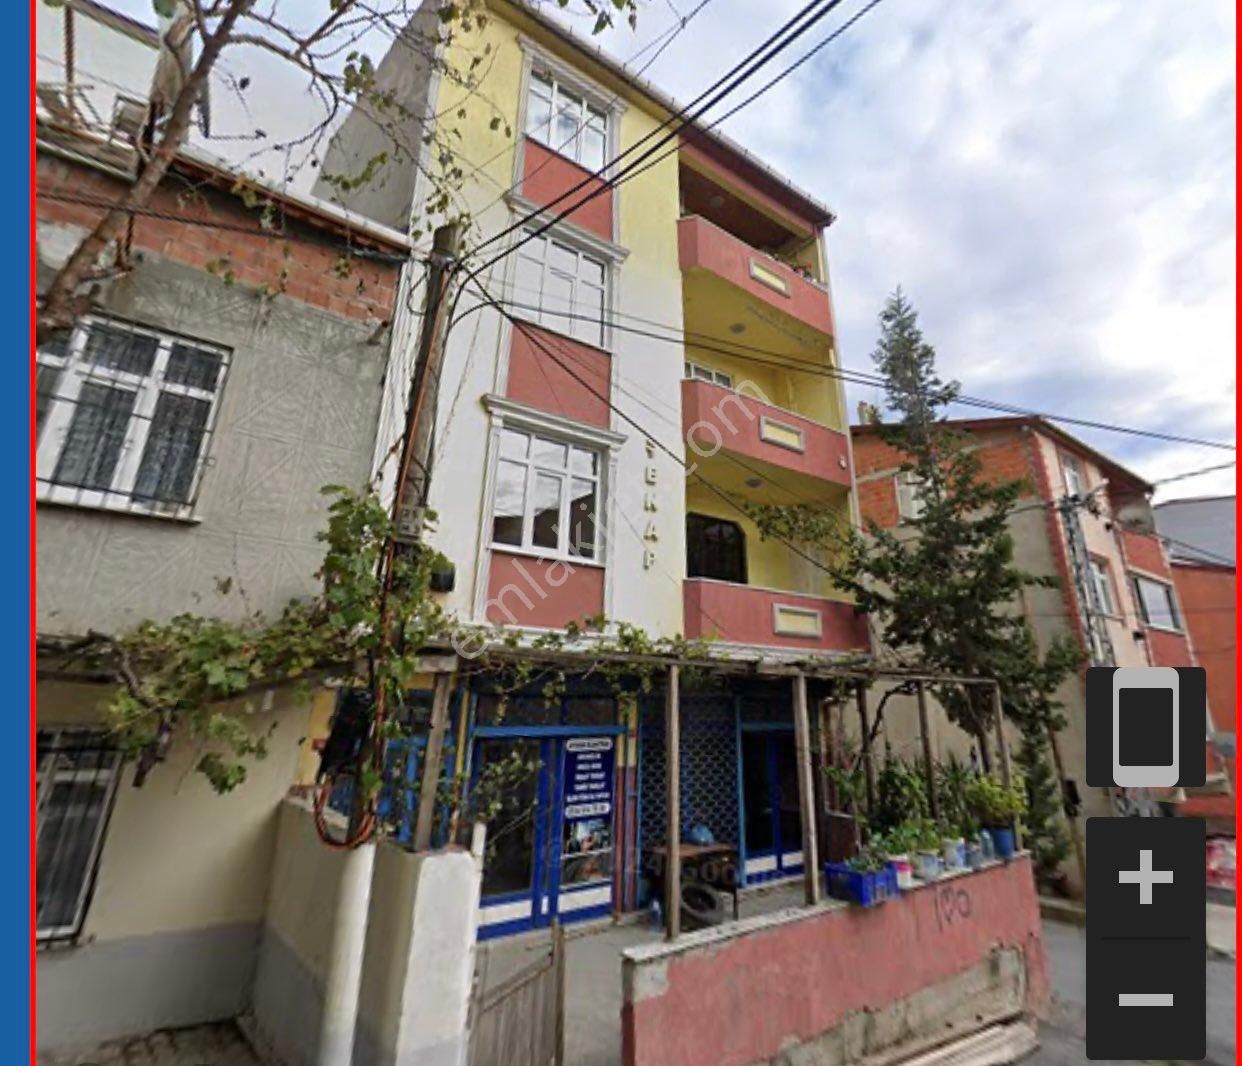 Arnavutköy Yunus Emre Satılık Bina Satılık müstakil bina merkezi konum ve kapalı otopark